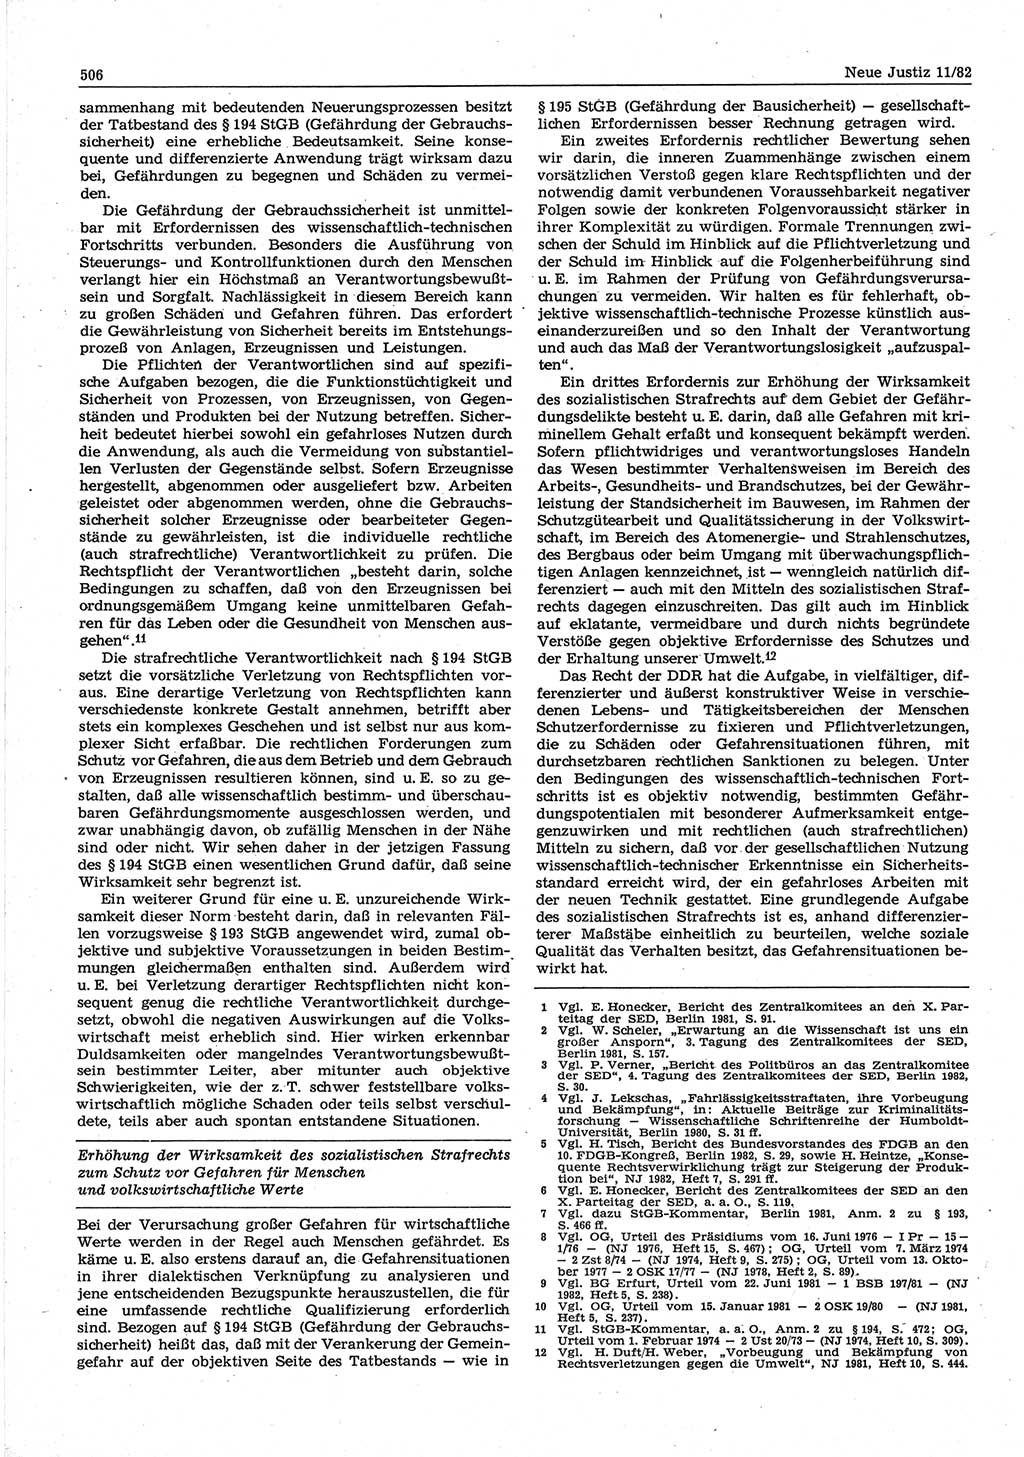 Neue Justiz (NJ), Zeitschrift für sozialistisches Recht und Gesetzlichkeit [Deutsche Demokratische Republik (DDR)], 36. Jahrgang 1982, Seite 506 (NJ DDR 1982, S. 506)